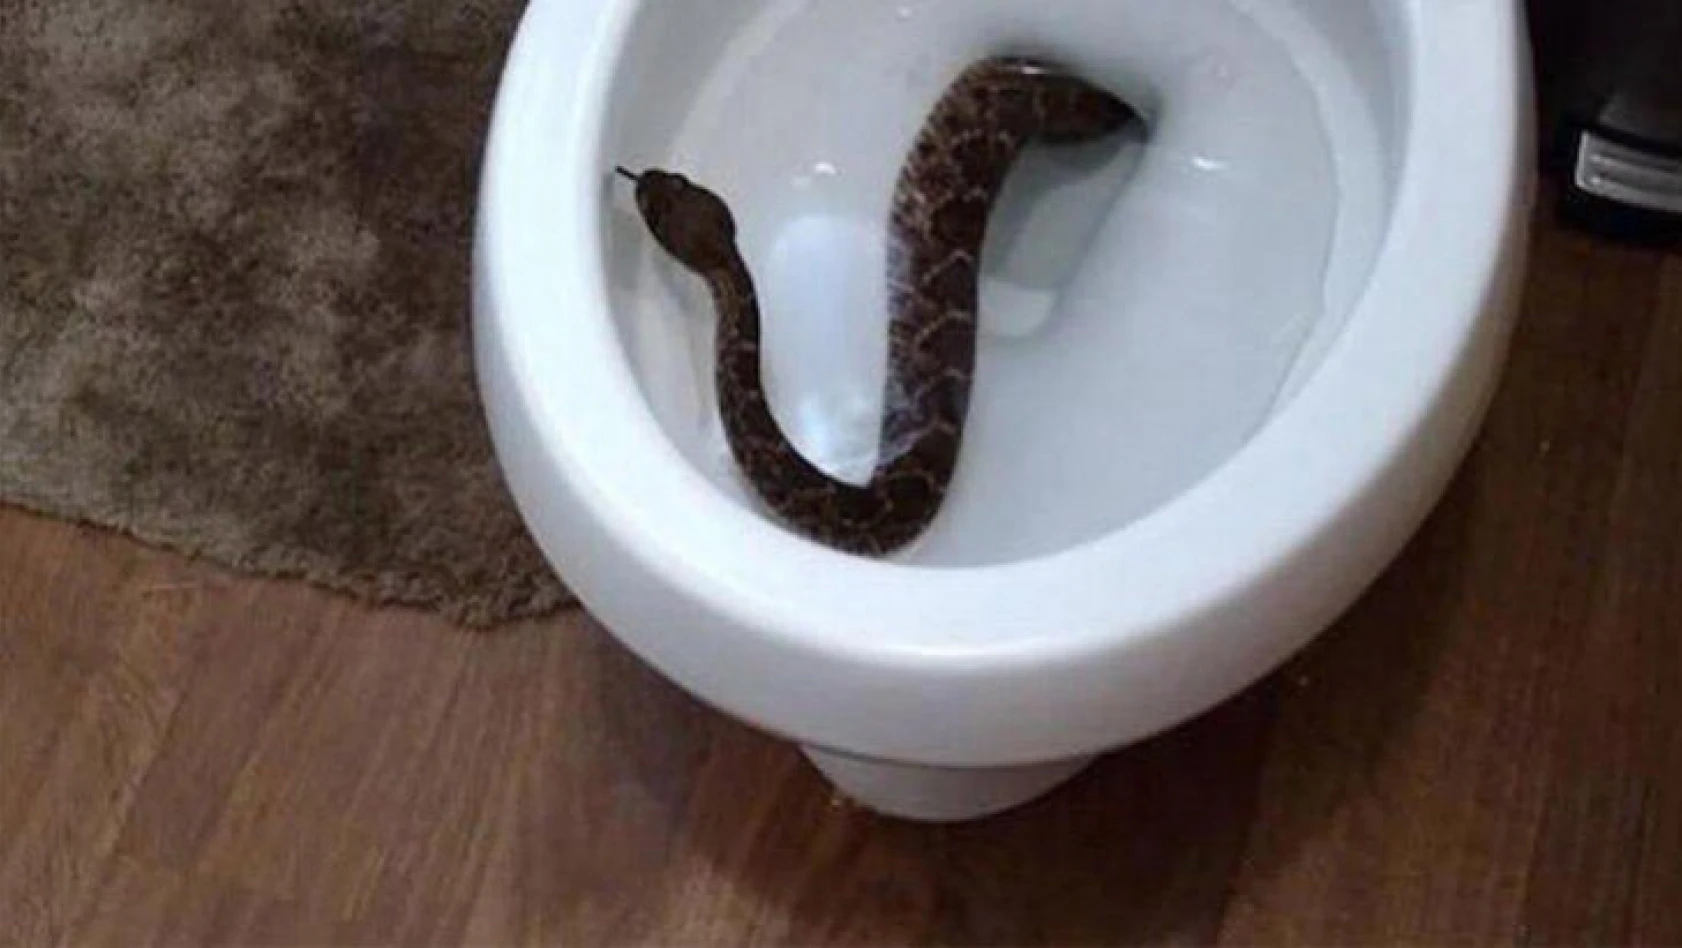 Tuvalete giren gencin cinsel organını yılan soktu